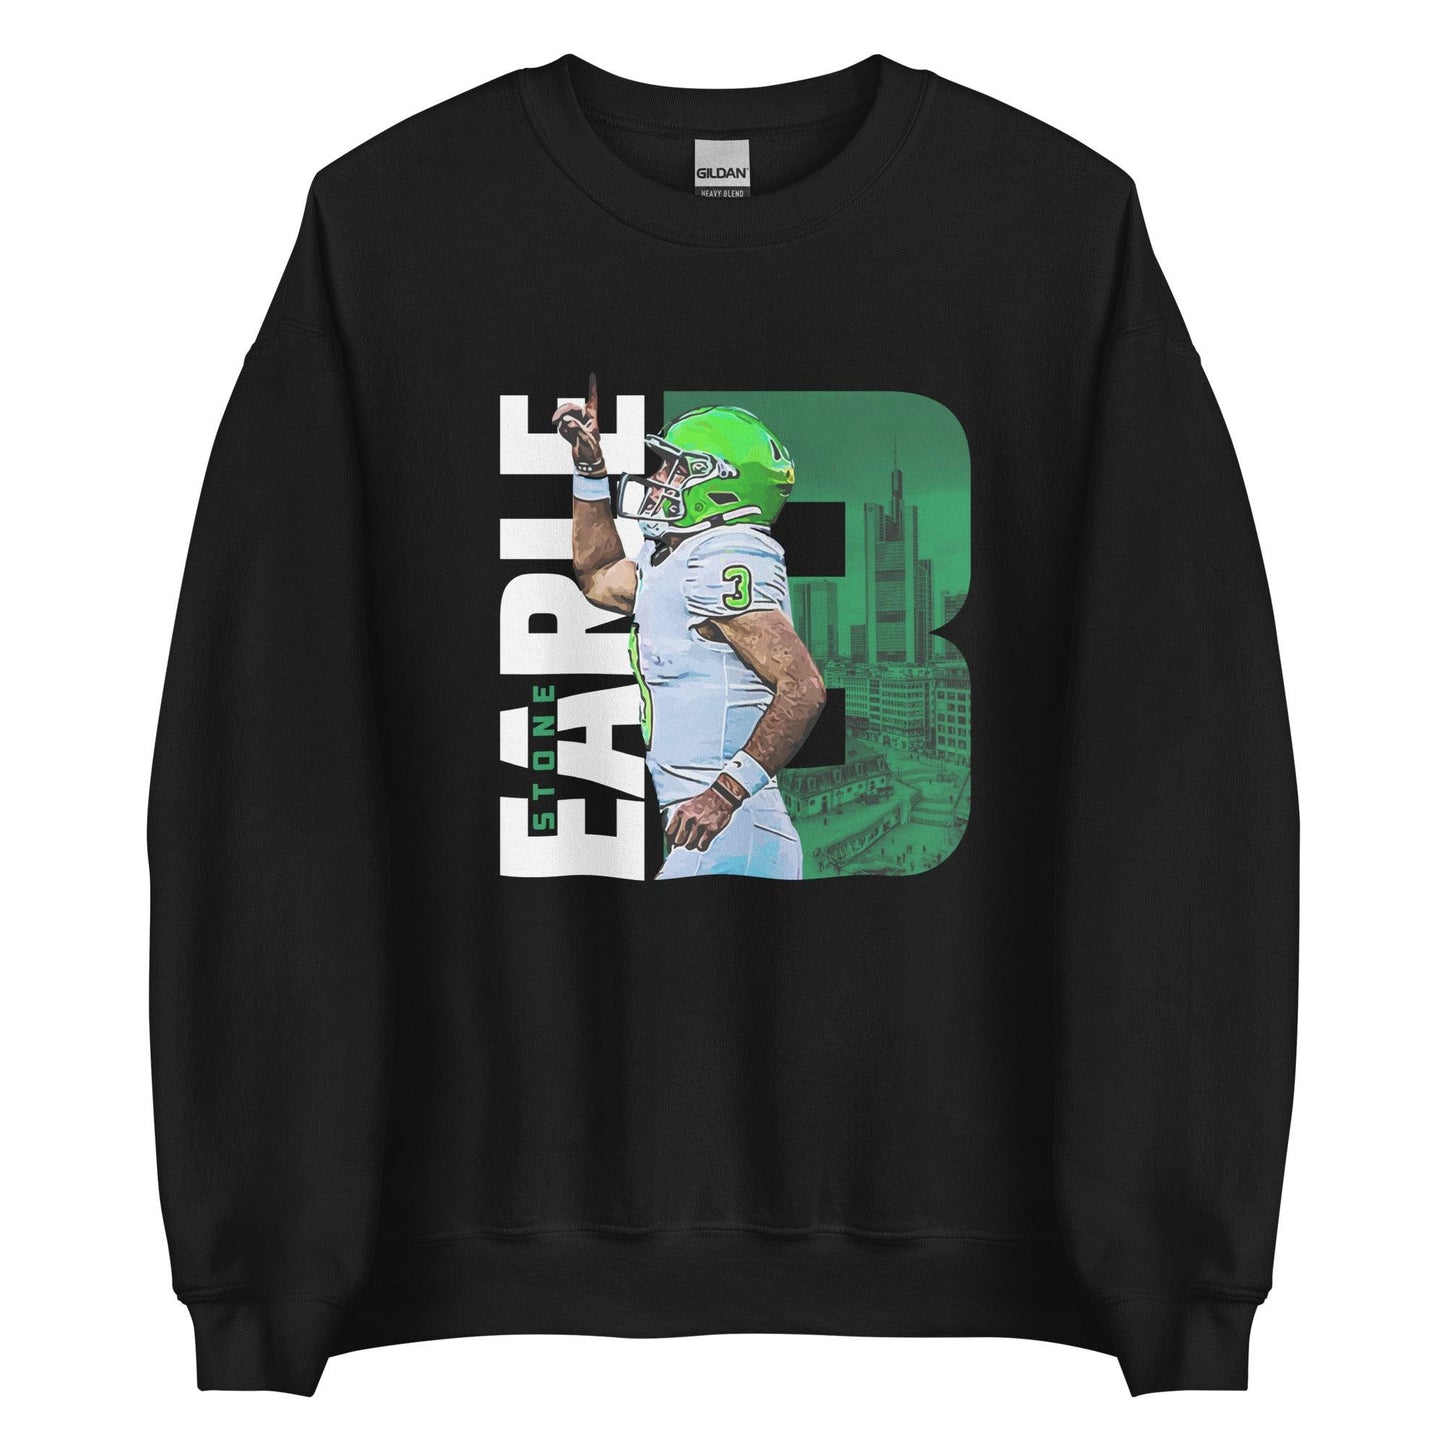 Stone Earle "Gameday" Sweatshirt - Fan Arch